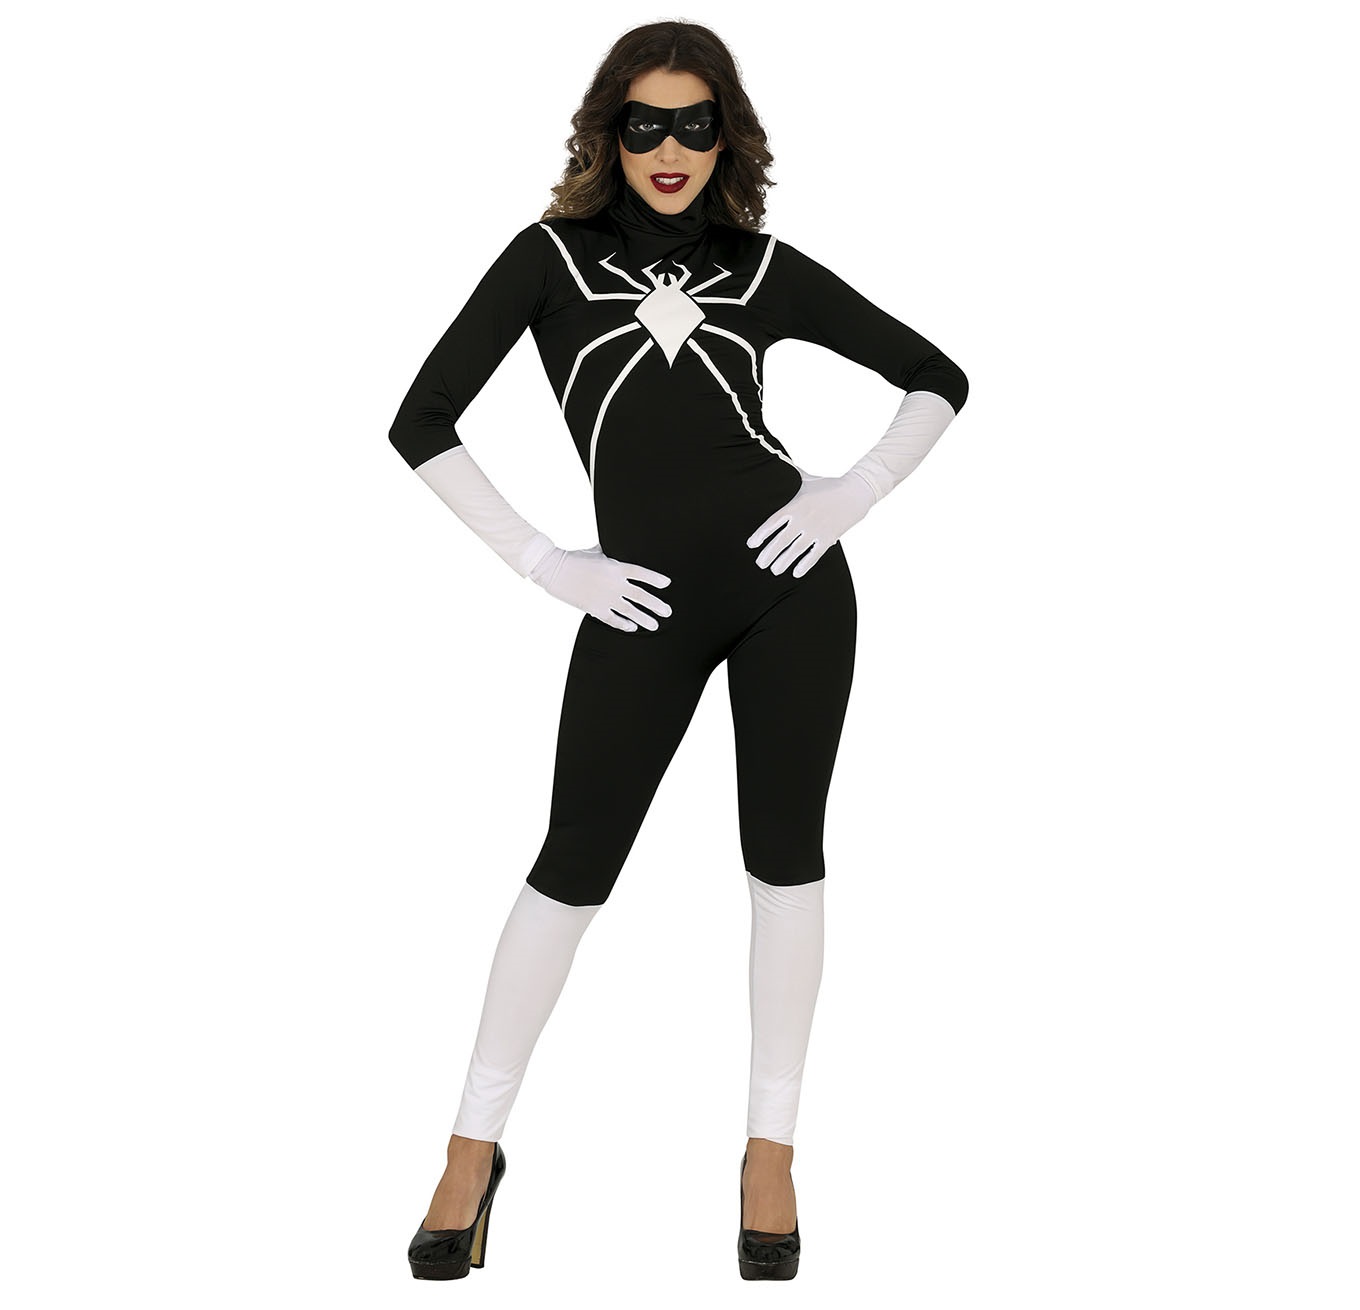 Guirca Dámský kostým - Černá Spiderwoman Velikost - dospělý: M